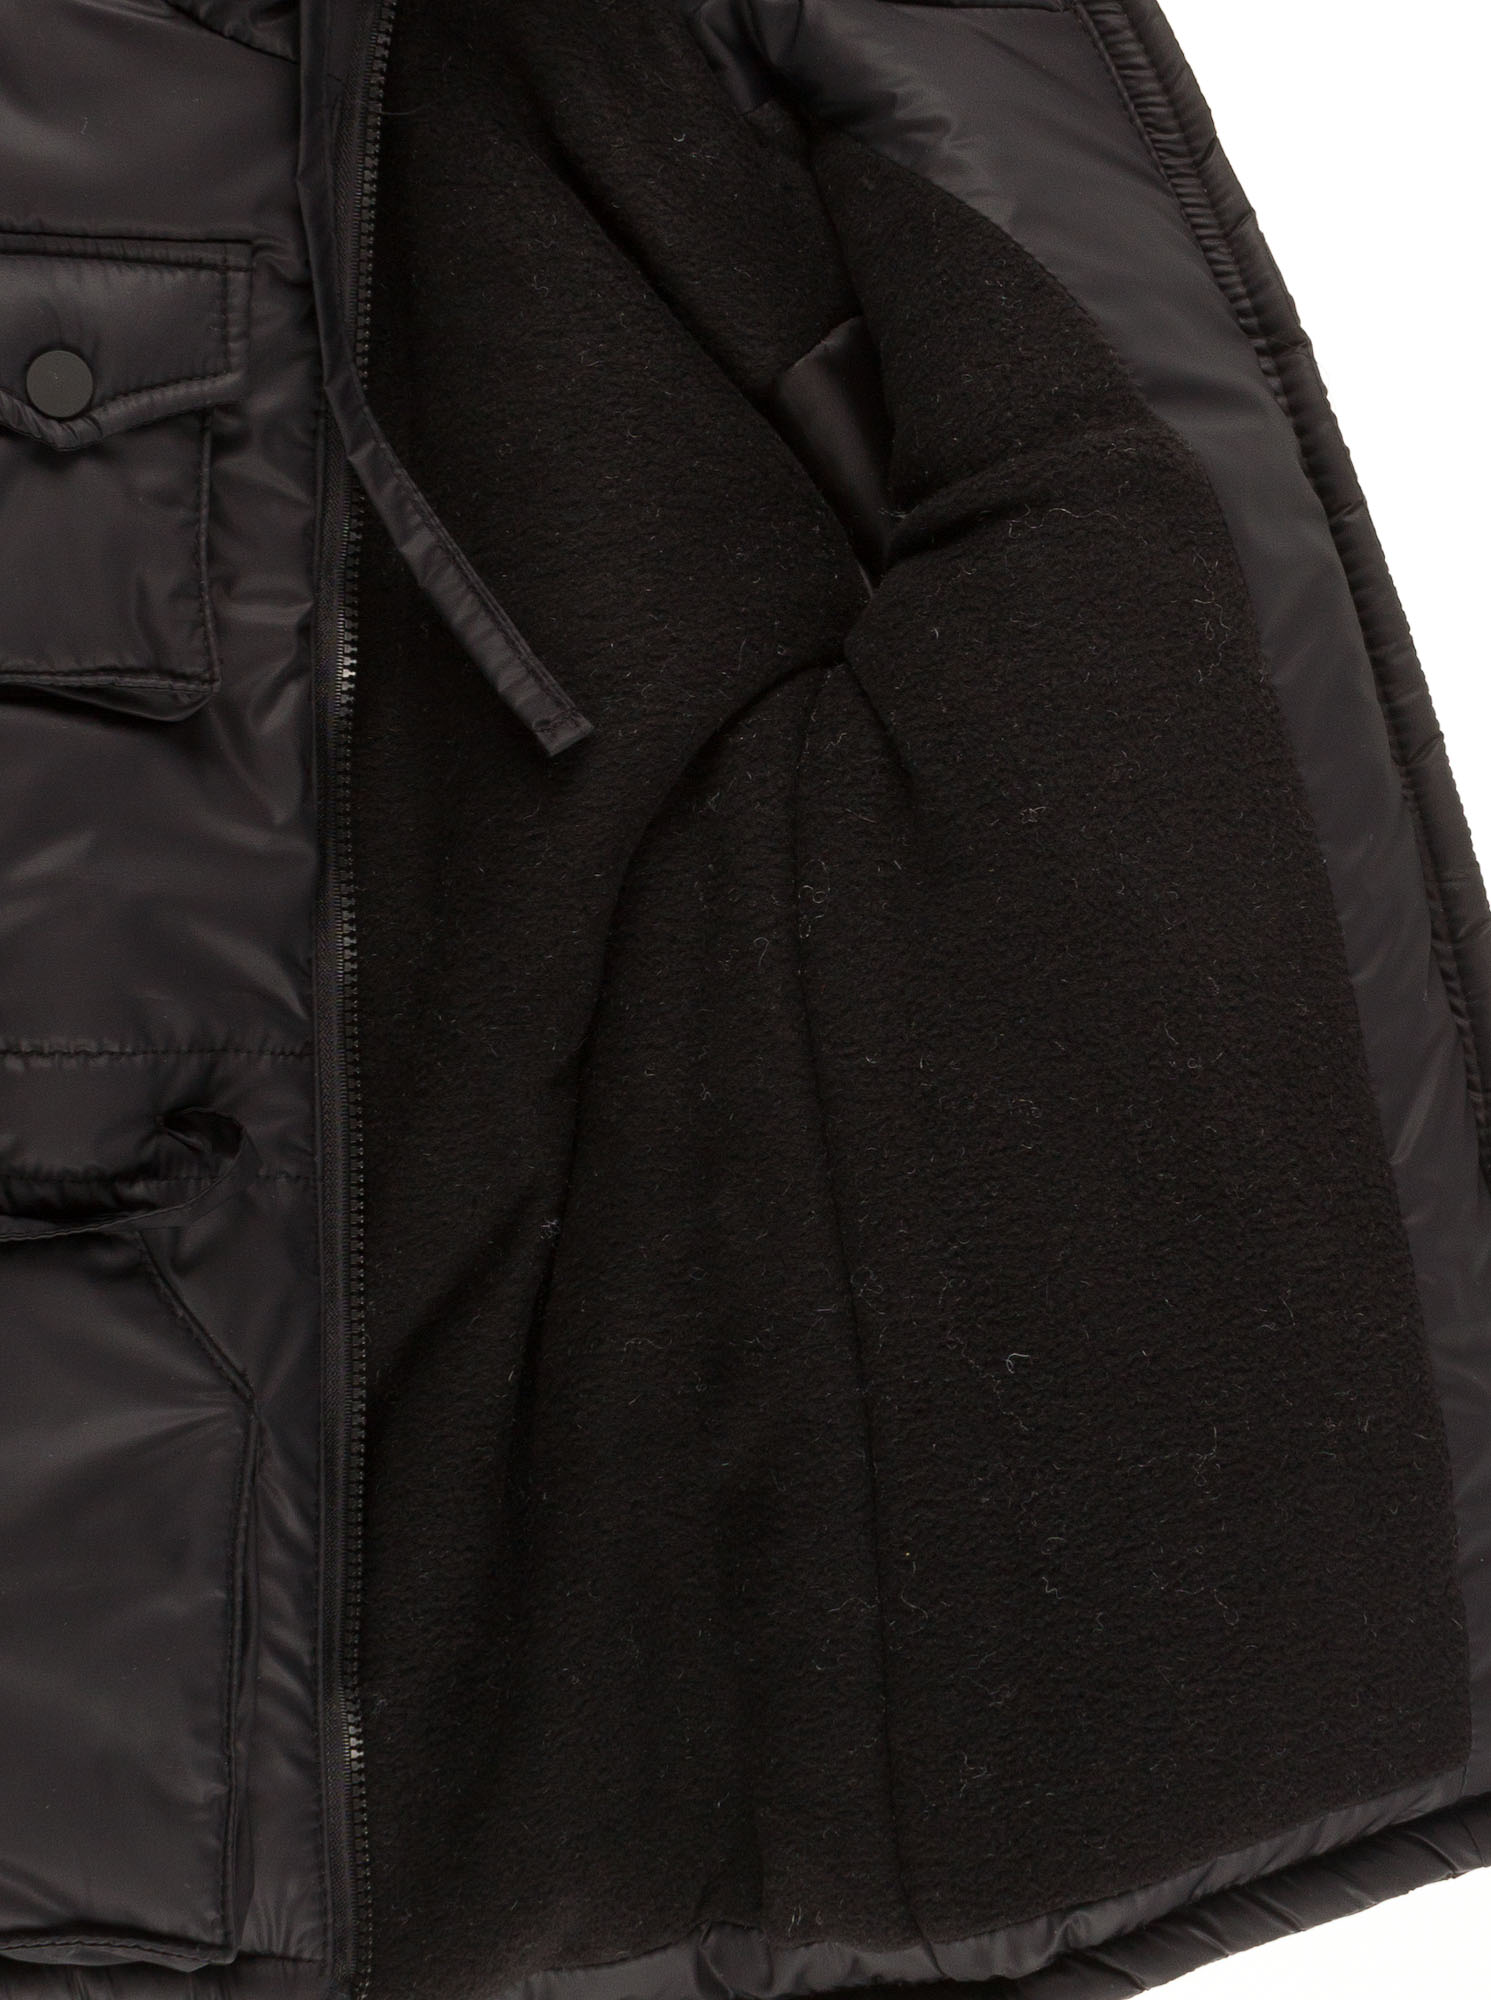 Куртка удлиненная зимняя для мальчика Одягайко черная 20095О - світлина